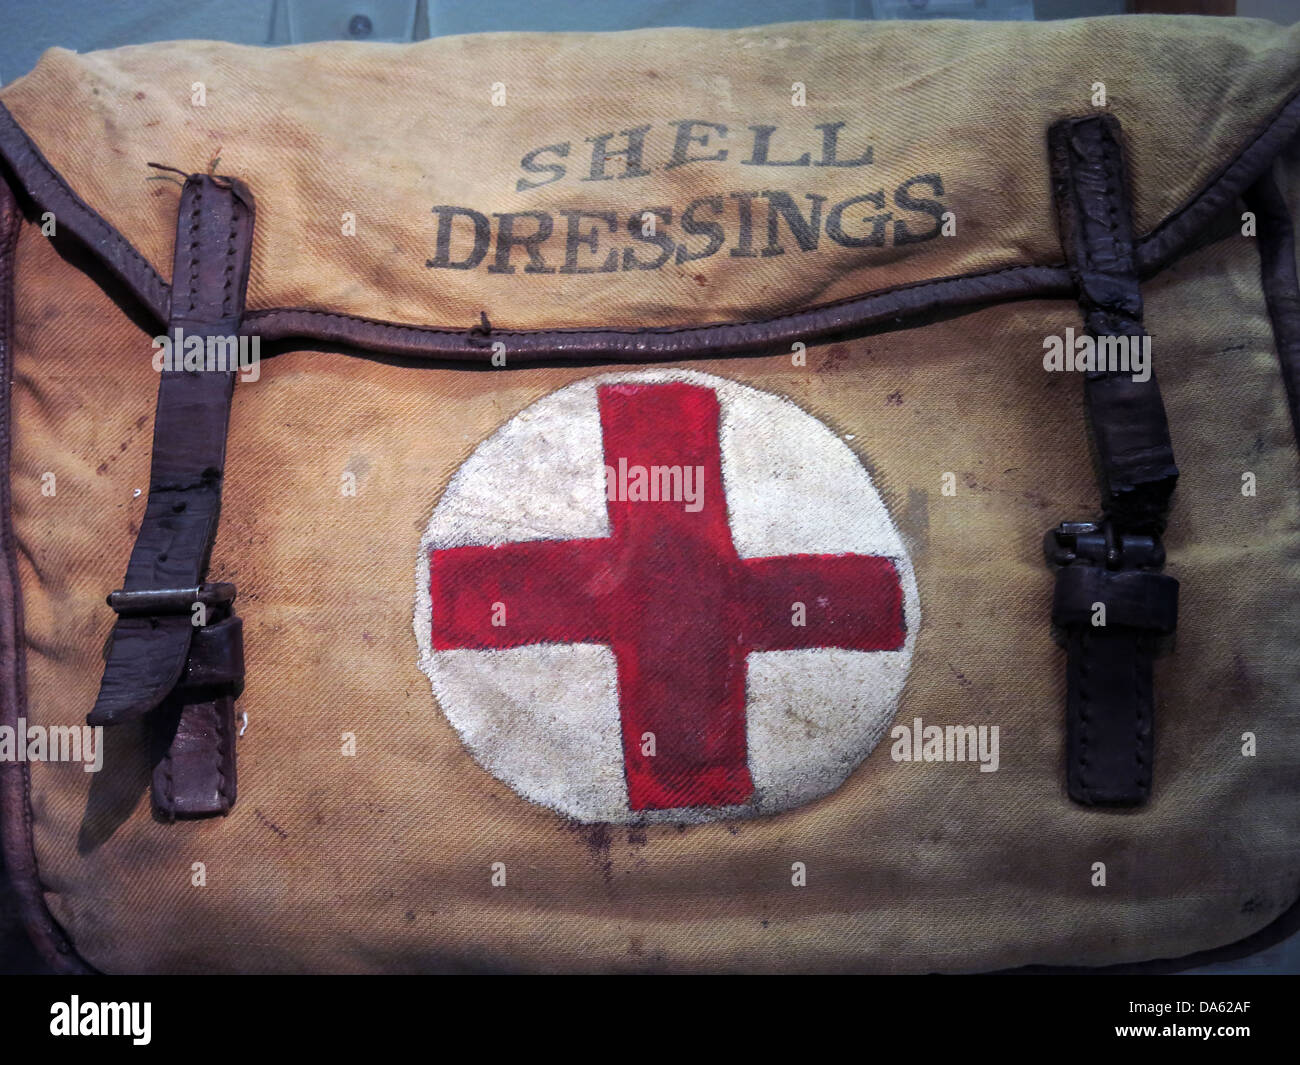 World War 1 Shell sac de dressage, avec une croix rouge sur fond blanc Banque D'Images